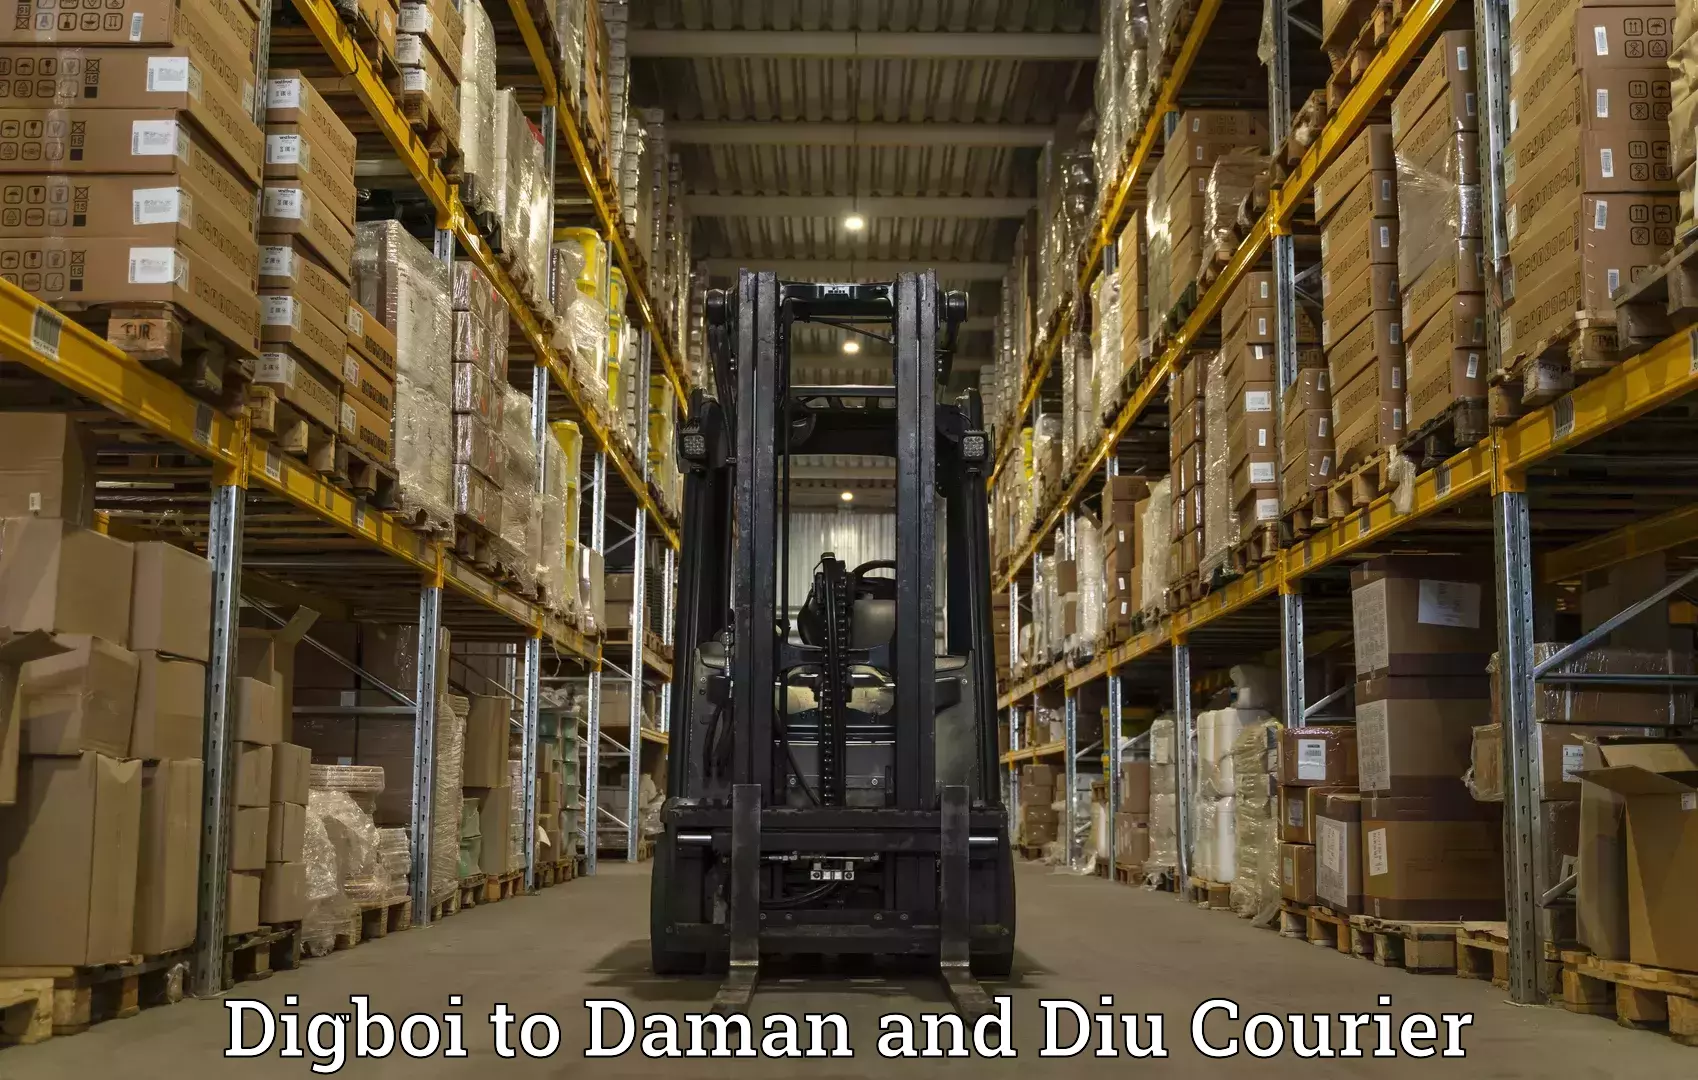 Budget-friendly shipping Digboi to Diu